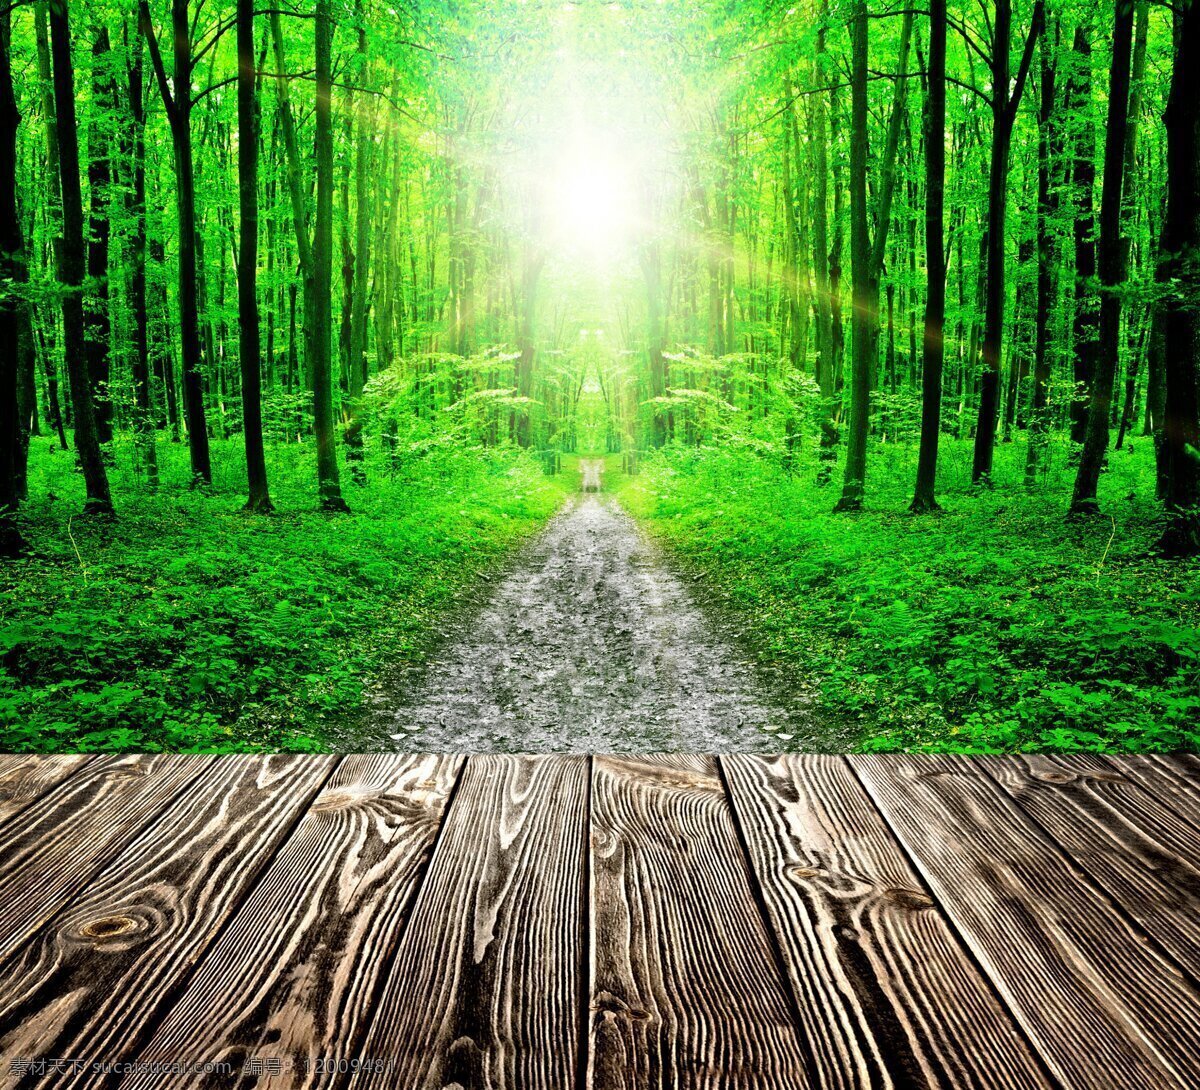 木板图片 木板 地板 地板广告 森林 树林 绿树 大树 春天 景观 风景 景色 山水 自然 绿色 家居 设计景观 自然风光 自然景观 自然风景专辑 自然风景